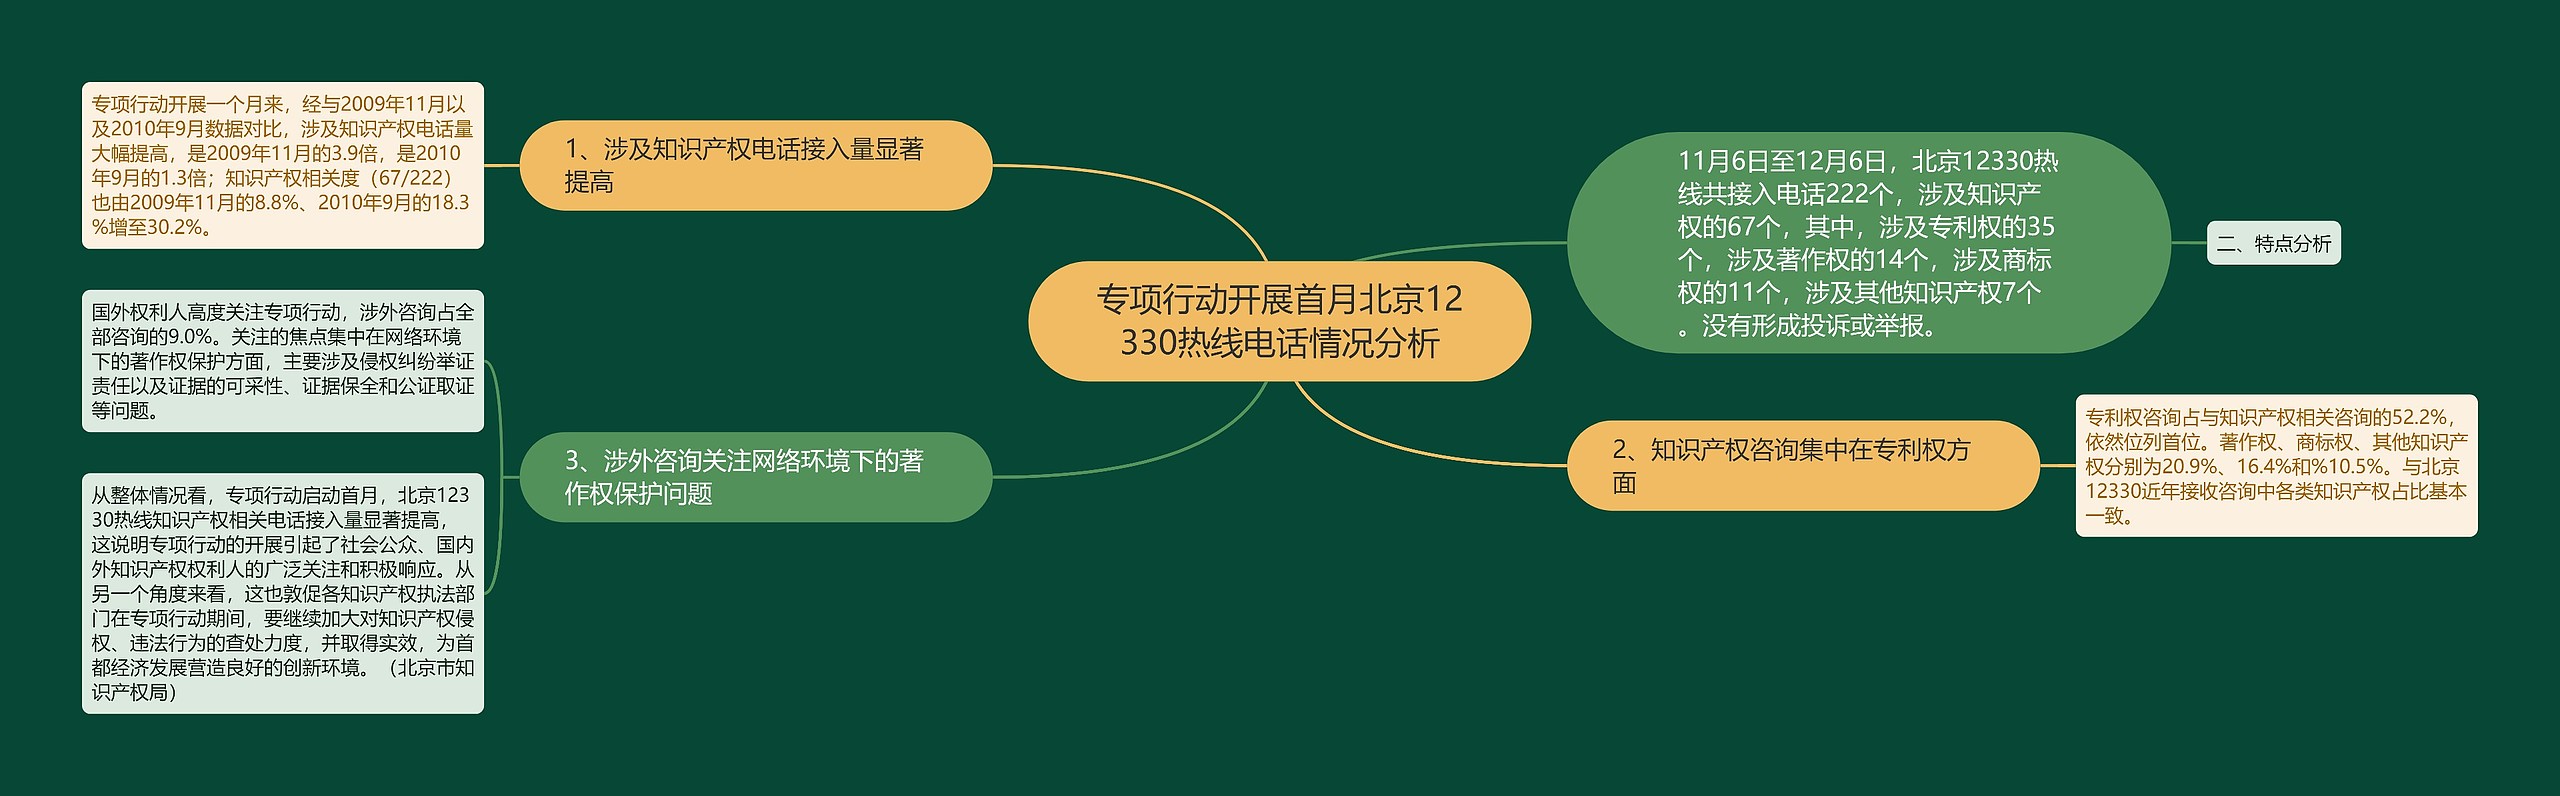 专项行动开展首月北京12330热线电话情况分析